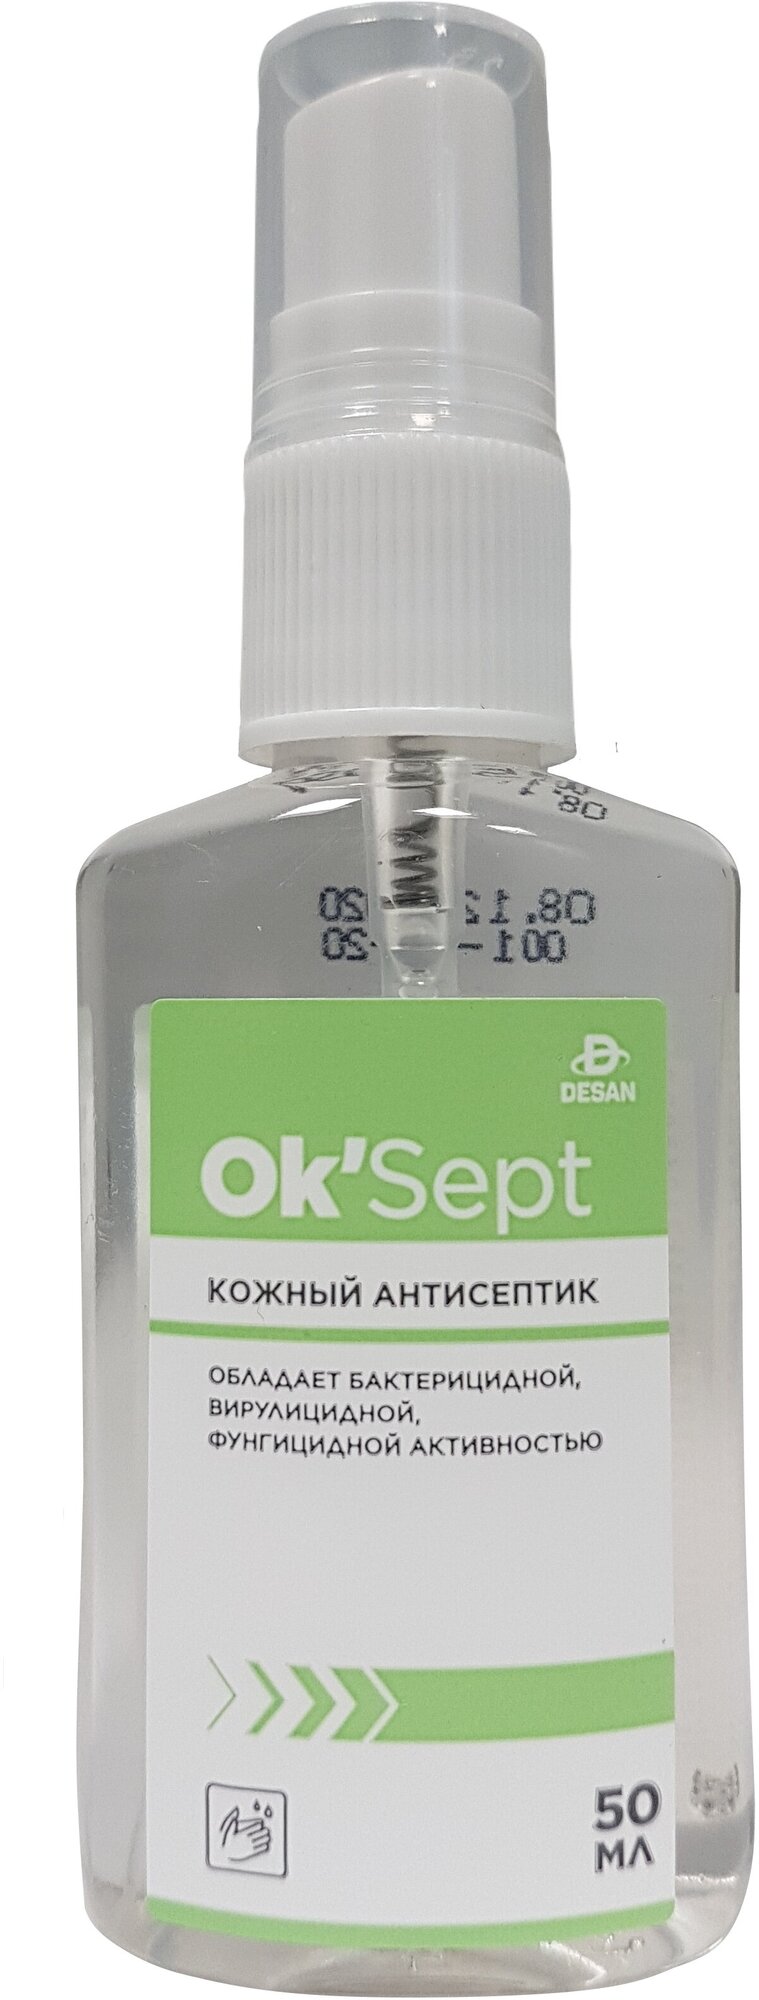 Антисептическое средство OK’Sept (ОК'Септ) 50 мл. спрей